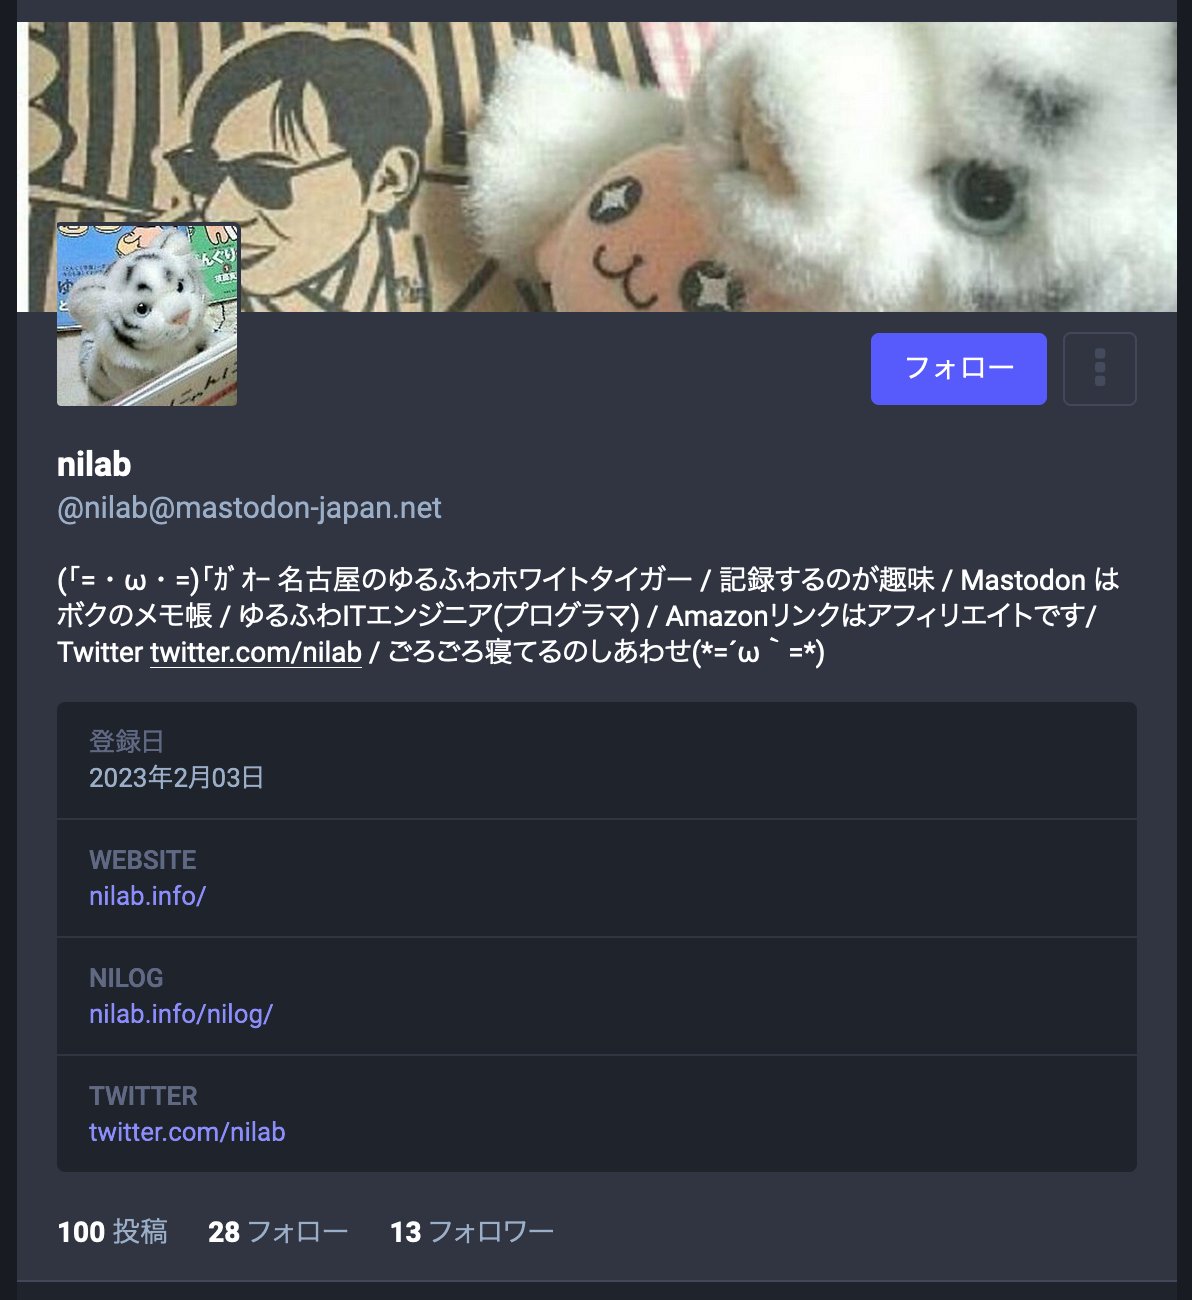 マストドンのプロフィールに各種リンクを追加した。  nilab (@nilab@mastodon-japan.net) - Mastodon Japan Server  